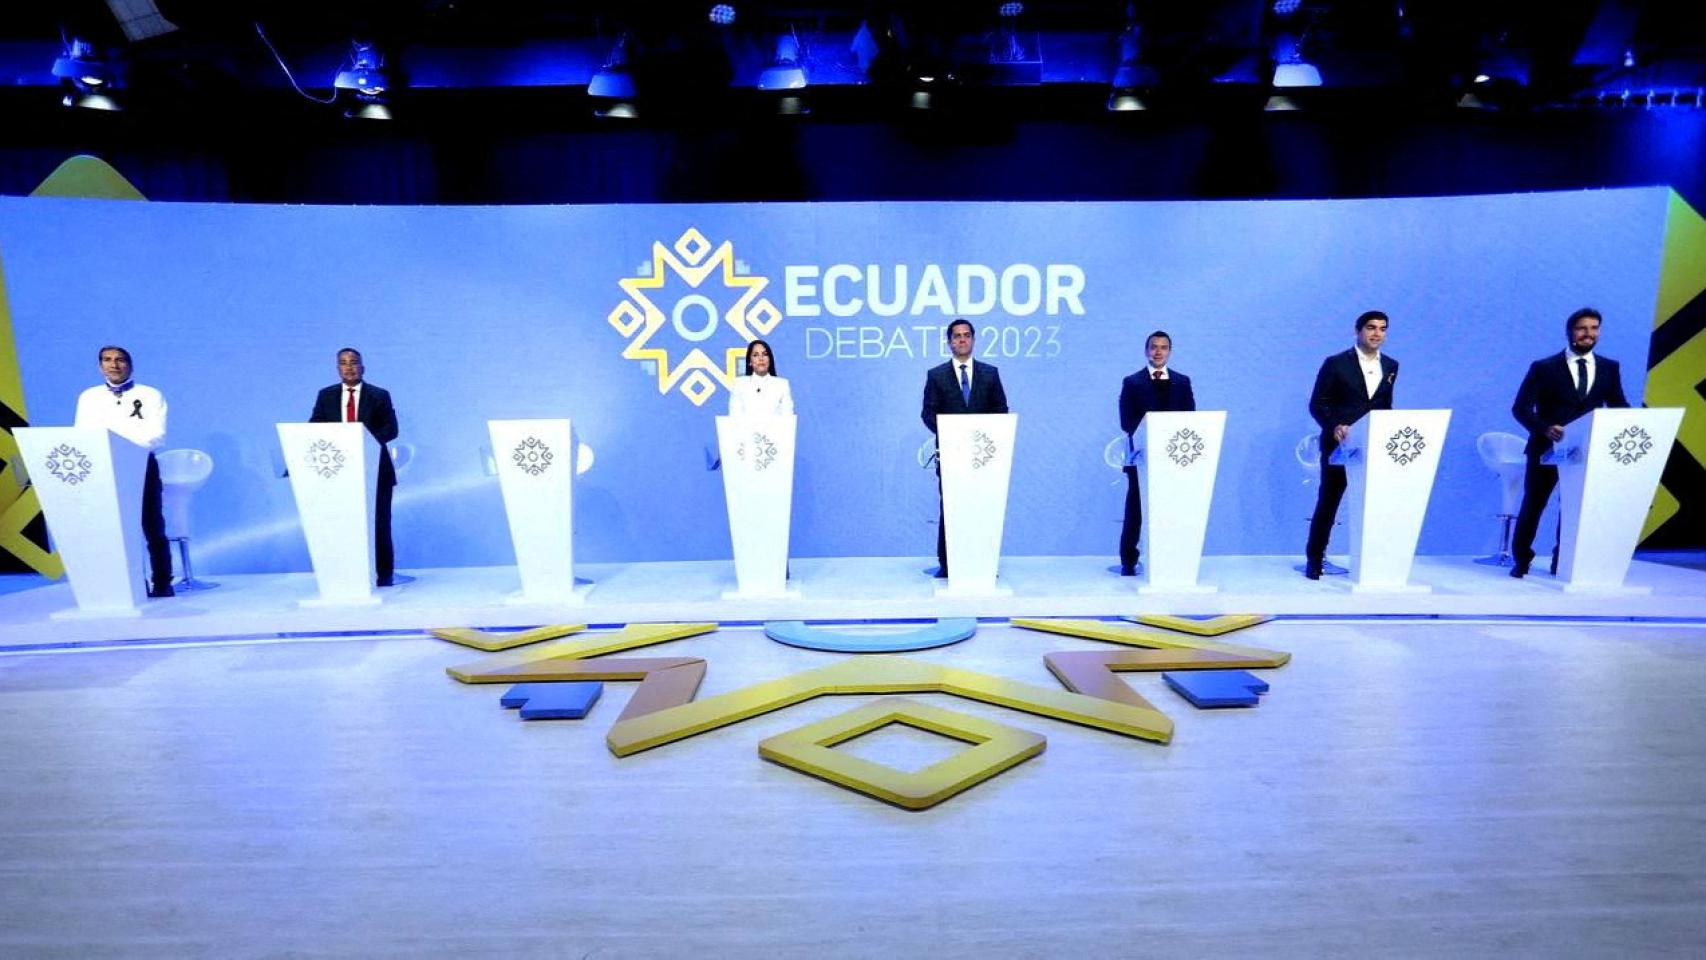 Siete candidatos presidenciales asisten al debate presidencial del domingo, con el atril de Villavicencio vacío.